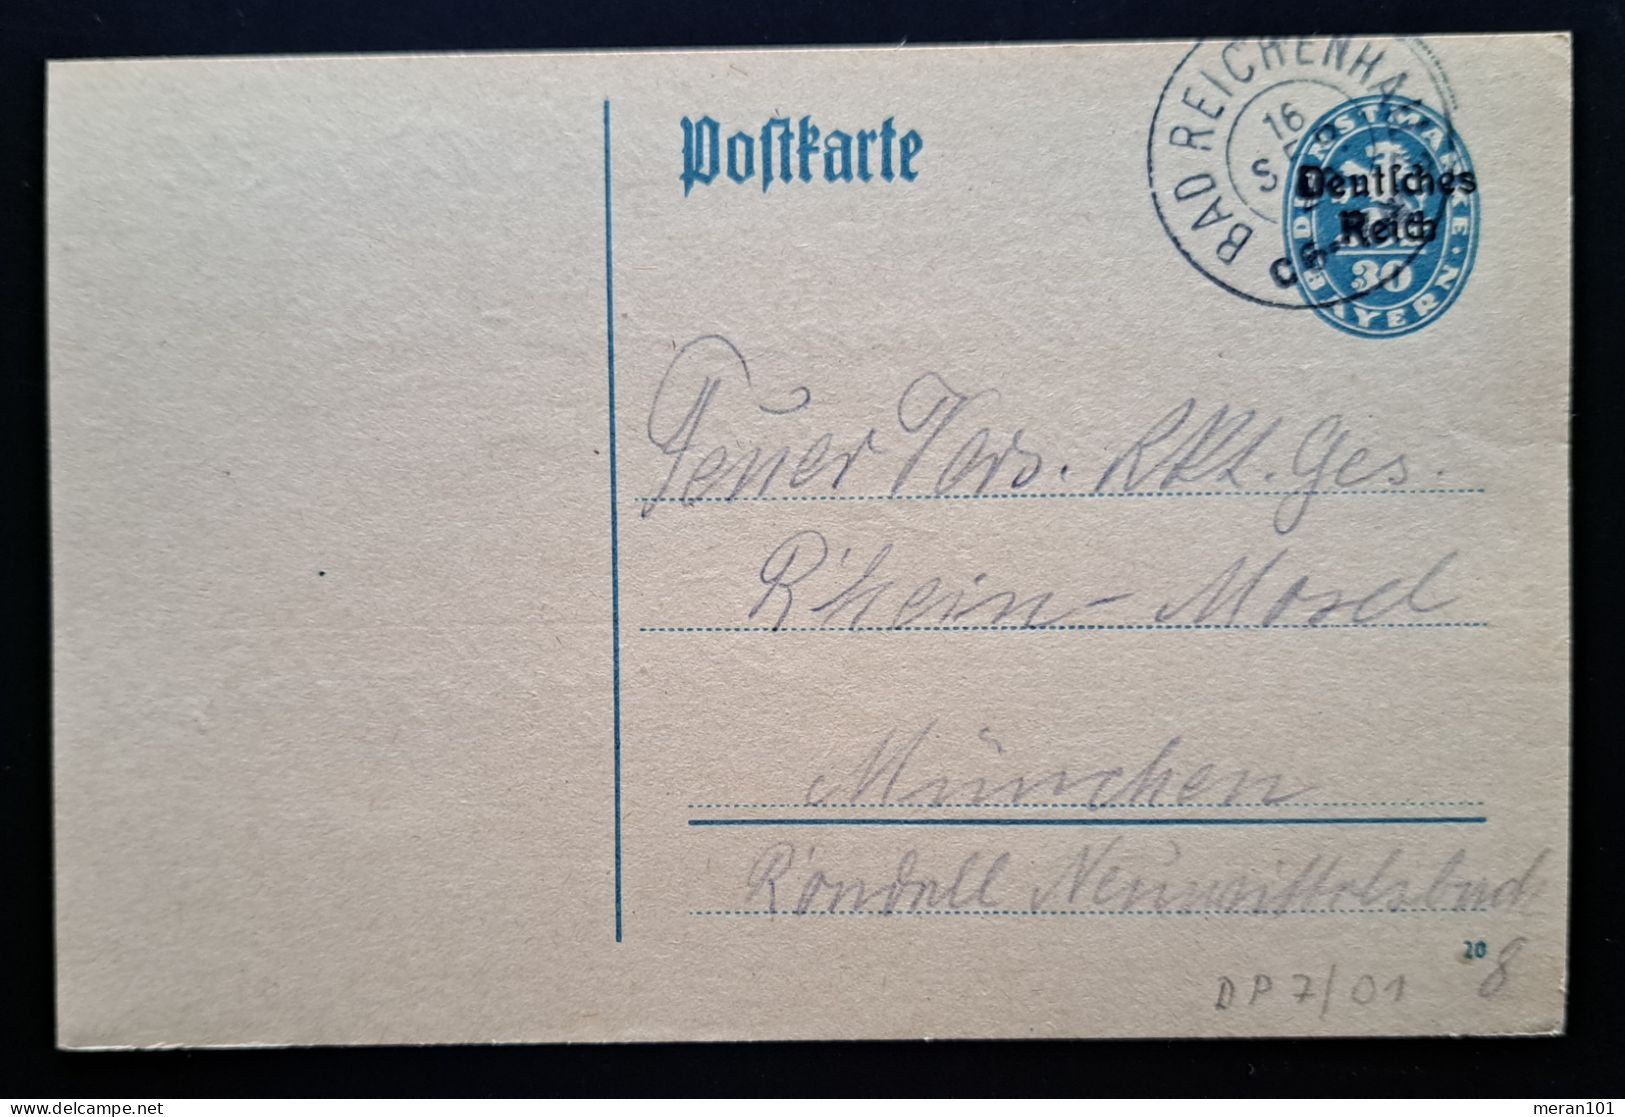 Deutsches Reich DIENST 1920, Dienstpostkarte DP7/01 BAD REICHENHALL - Oficial